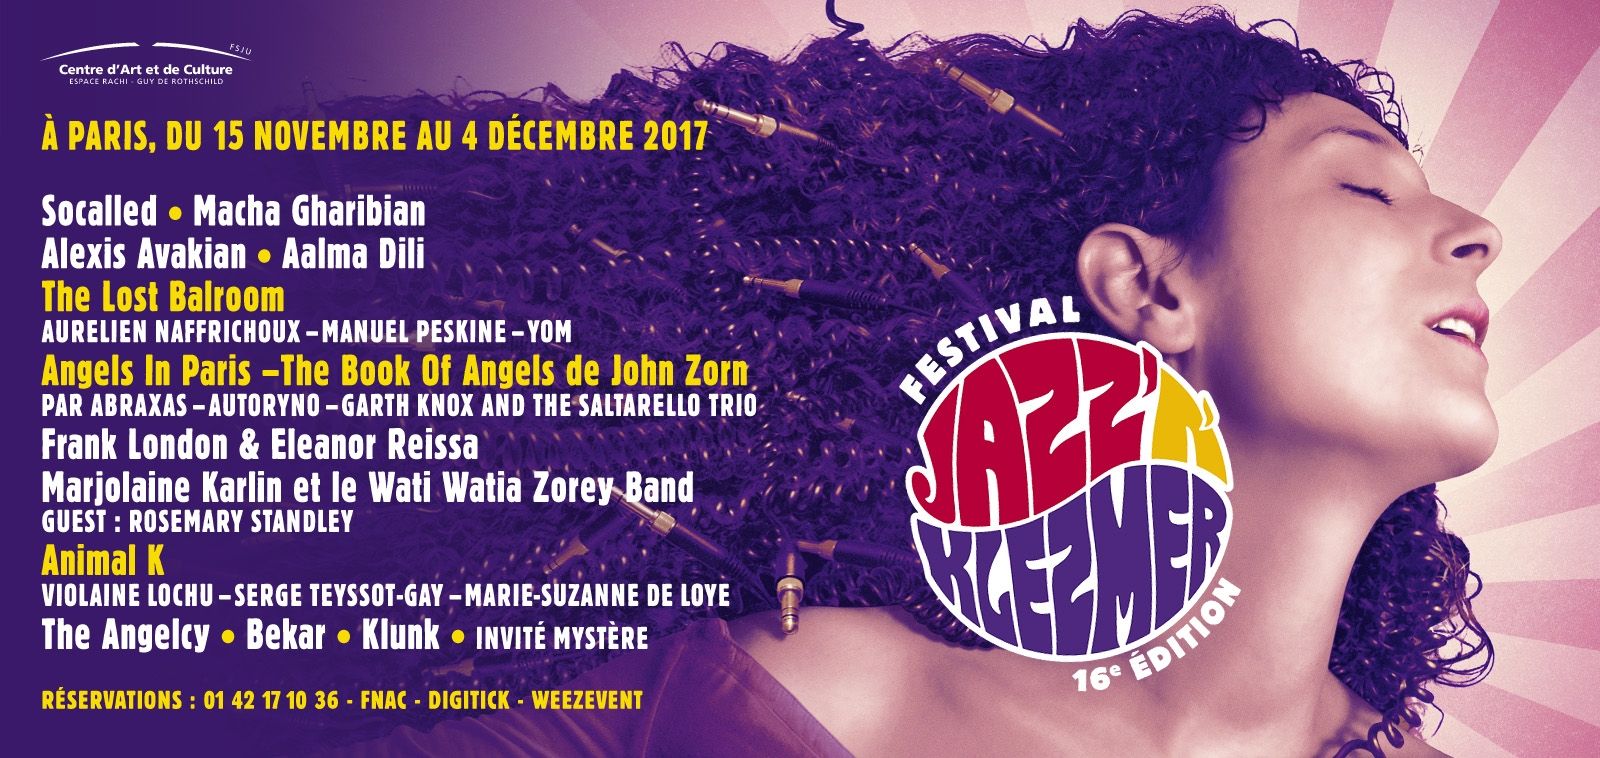 16ème édition du Festival Jazz’N’Klezmer - Du 15 Novembre au 4 Décembre 2017 - Paris